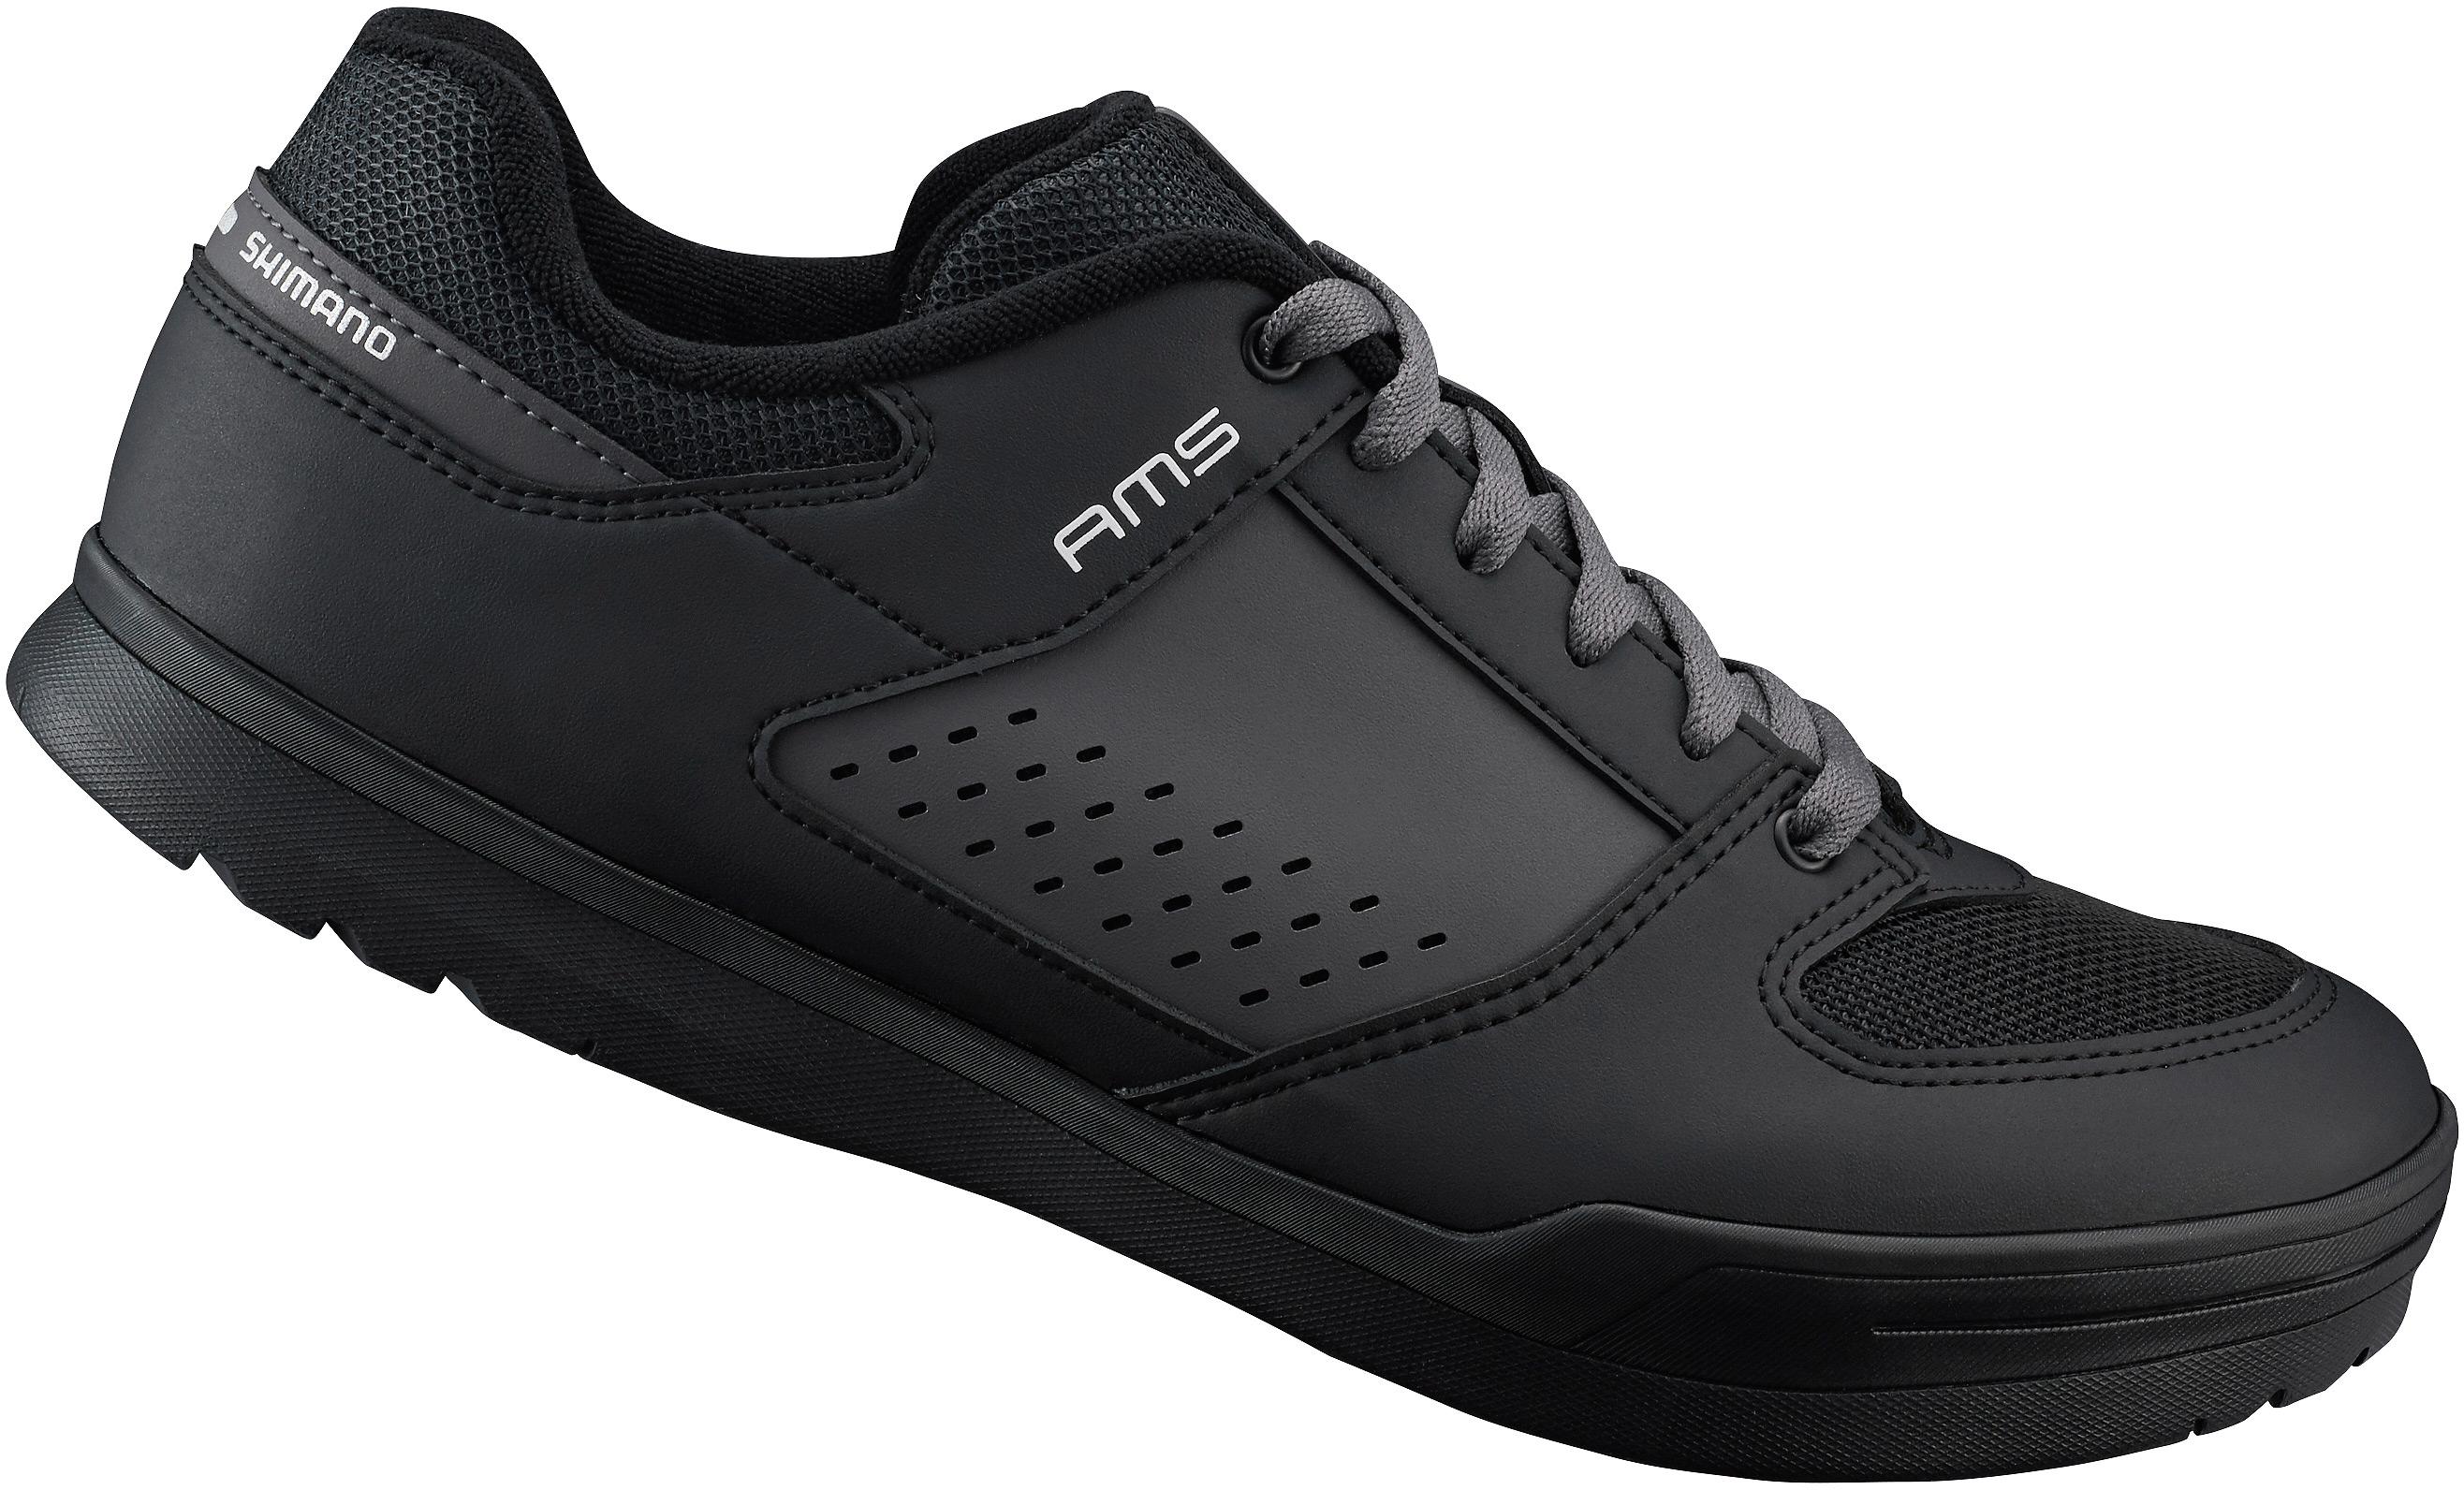 Am5 (Am501) Spd Shoes Black Size 41